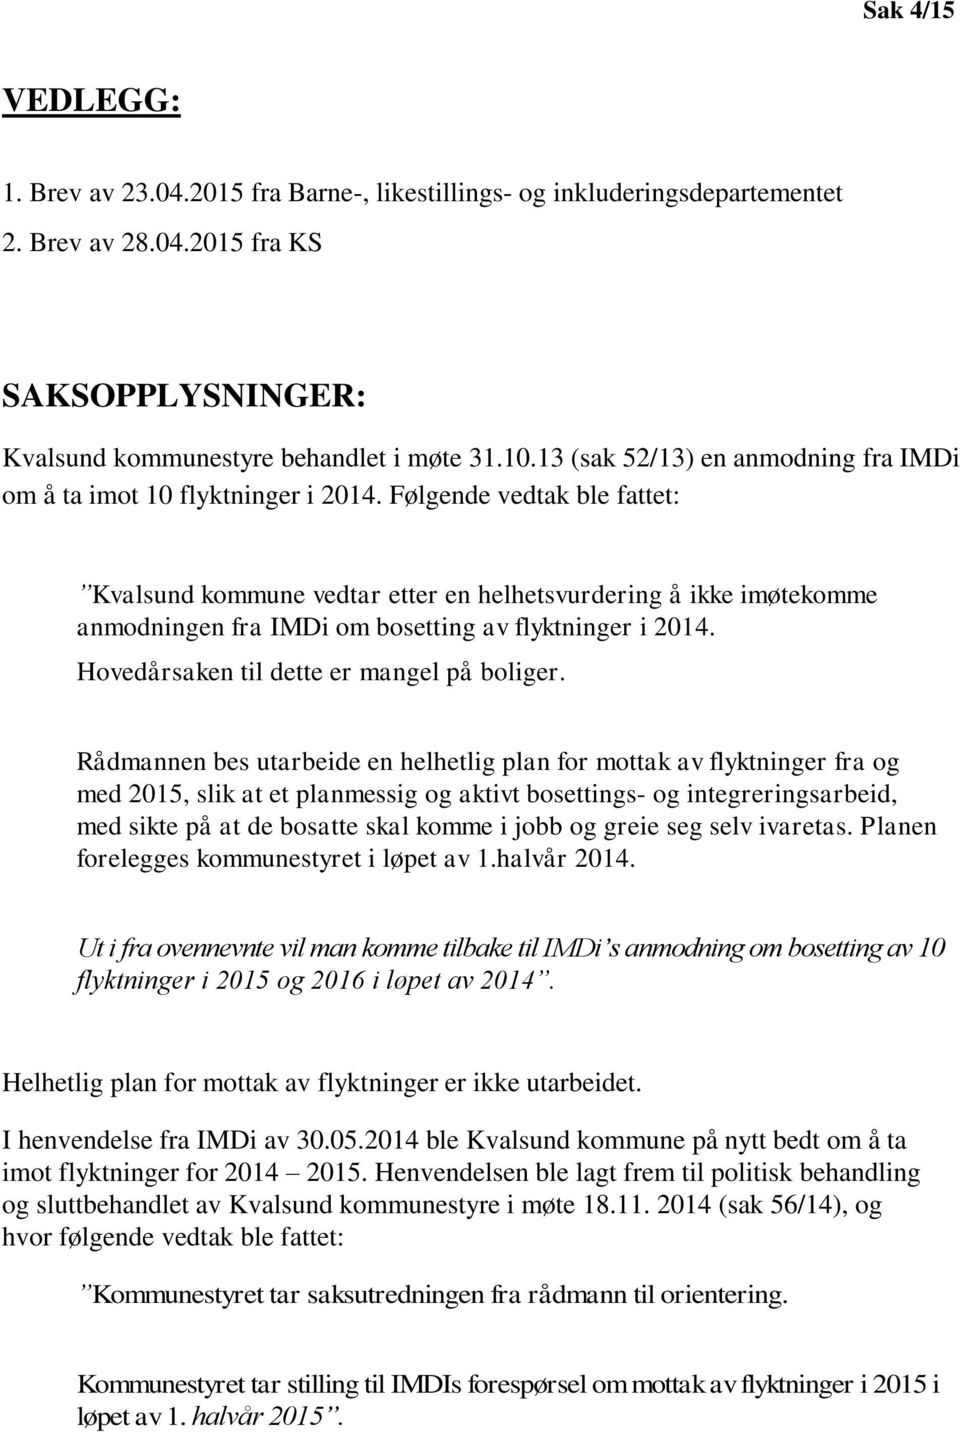 Følgende vedtak ble fattet: Kvalsund kommune vedtar etter en helhetsvurdering å ikke imøtekomme anmodningen fra IMDi om bosetting av flyktninger i 2014. Hovedårsaken til dette er mangel på boliger.